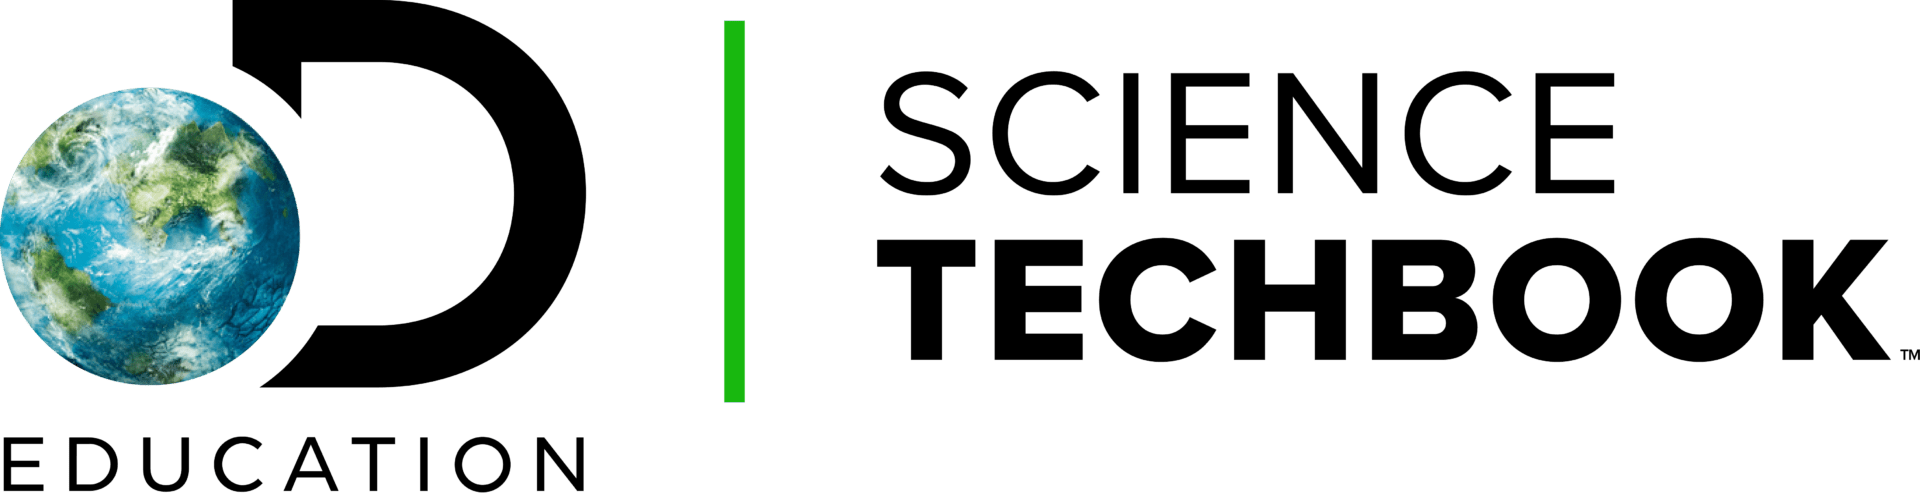 DE Science Techbook Logo Full Color Pos